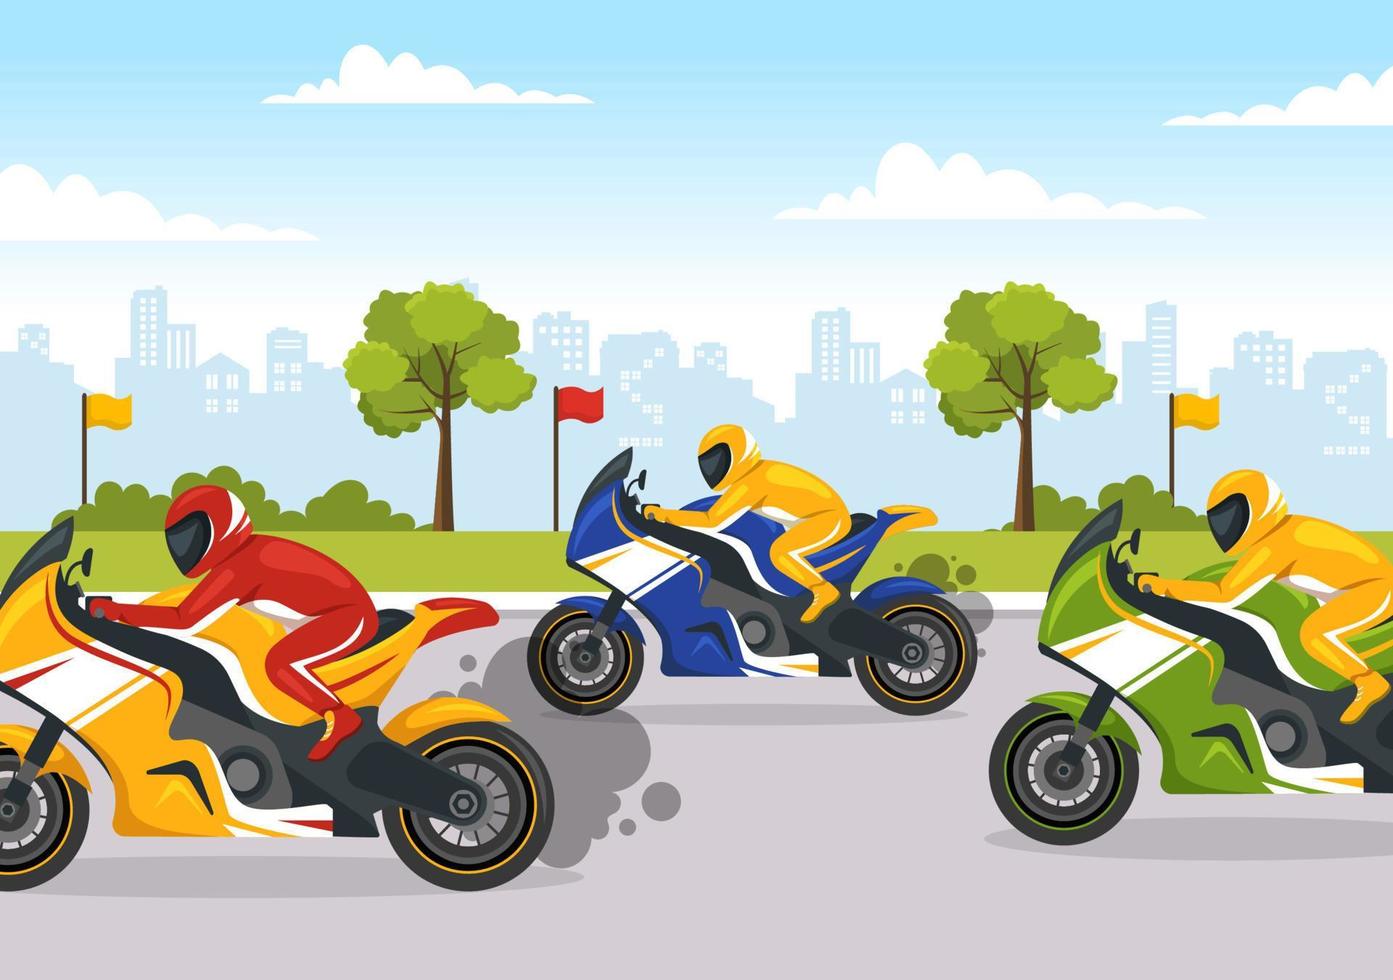 campeonato de carreras de motos en la ilustración de la pista de carreras con motor de carrera para la página de inicio en plantillas planas dibujadas a mano de dibujos animados vector